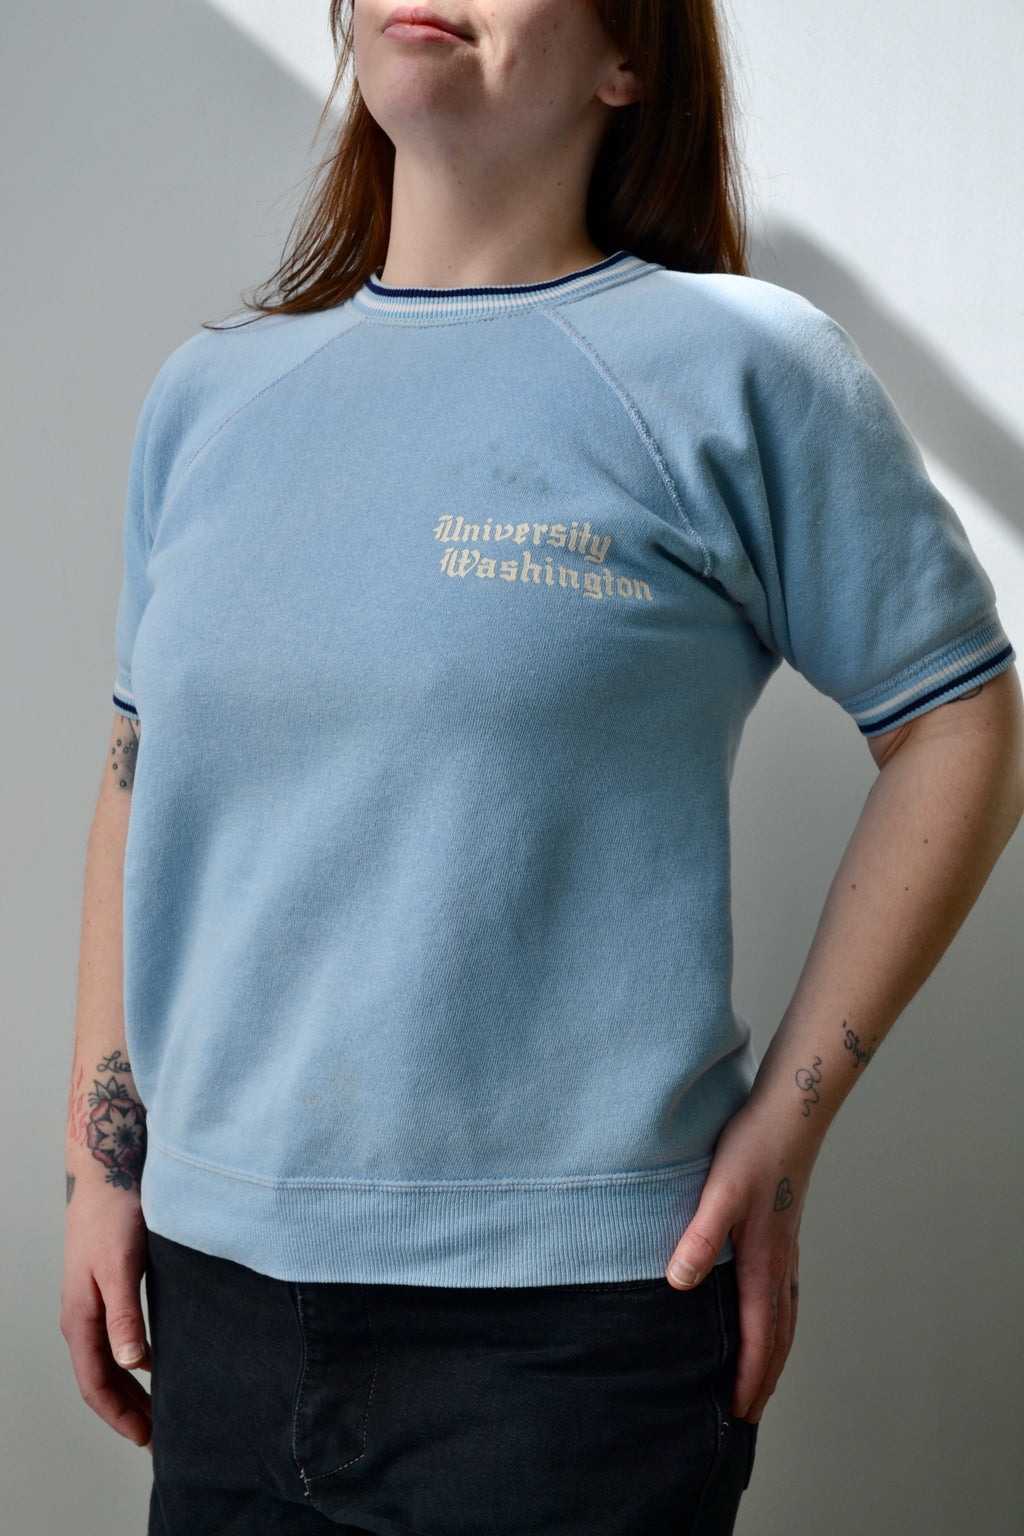 60s/70s University Of Washington Sweatshirt Tee